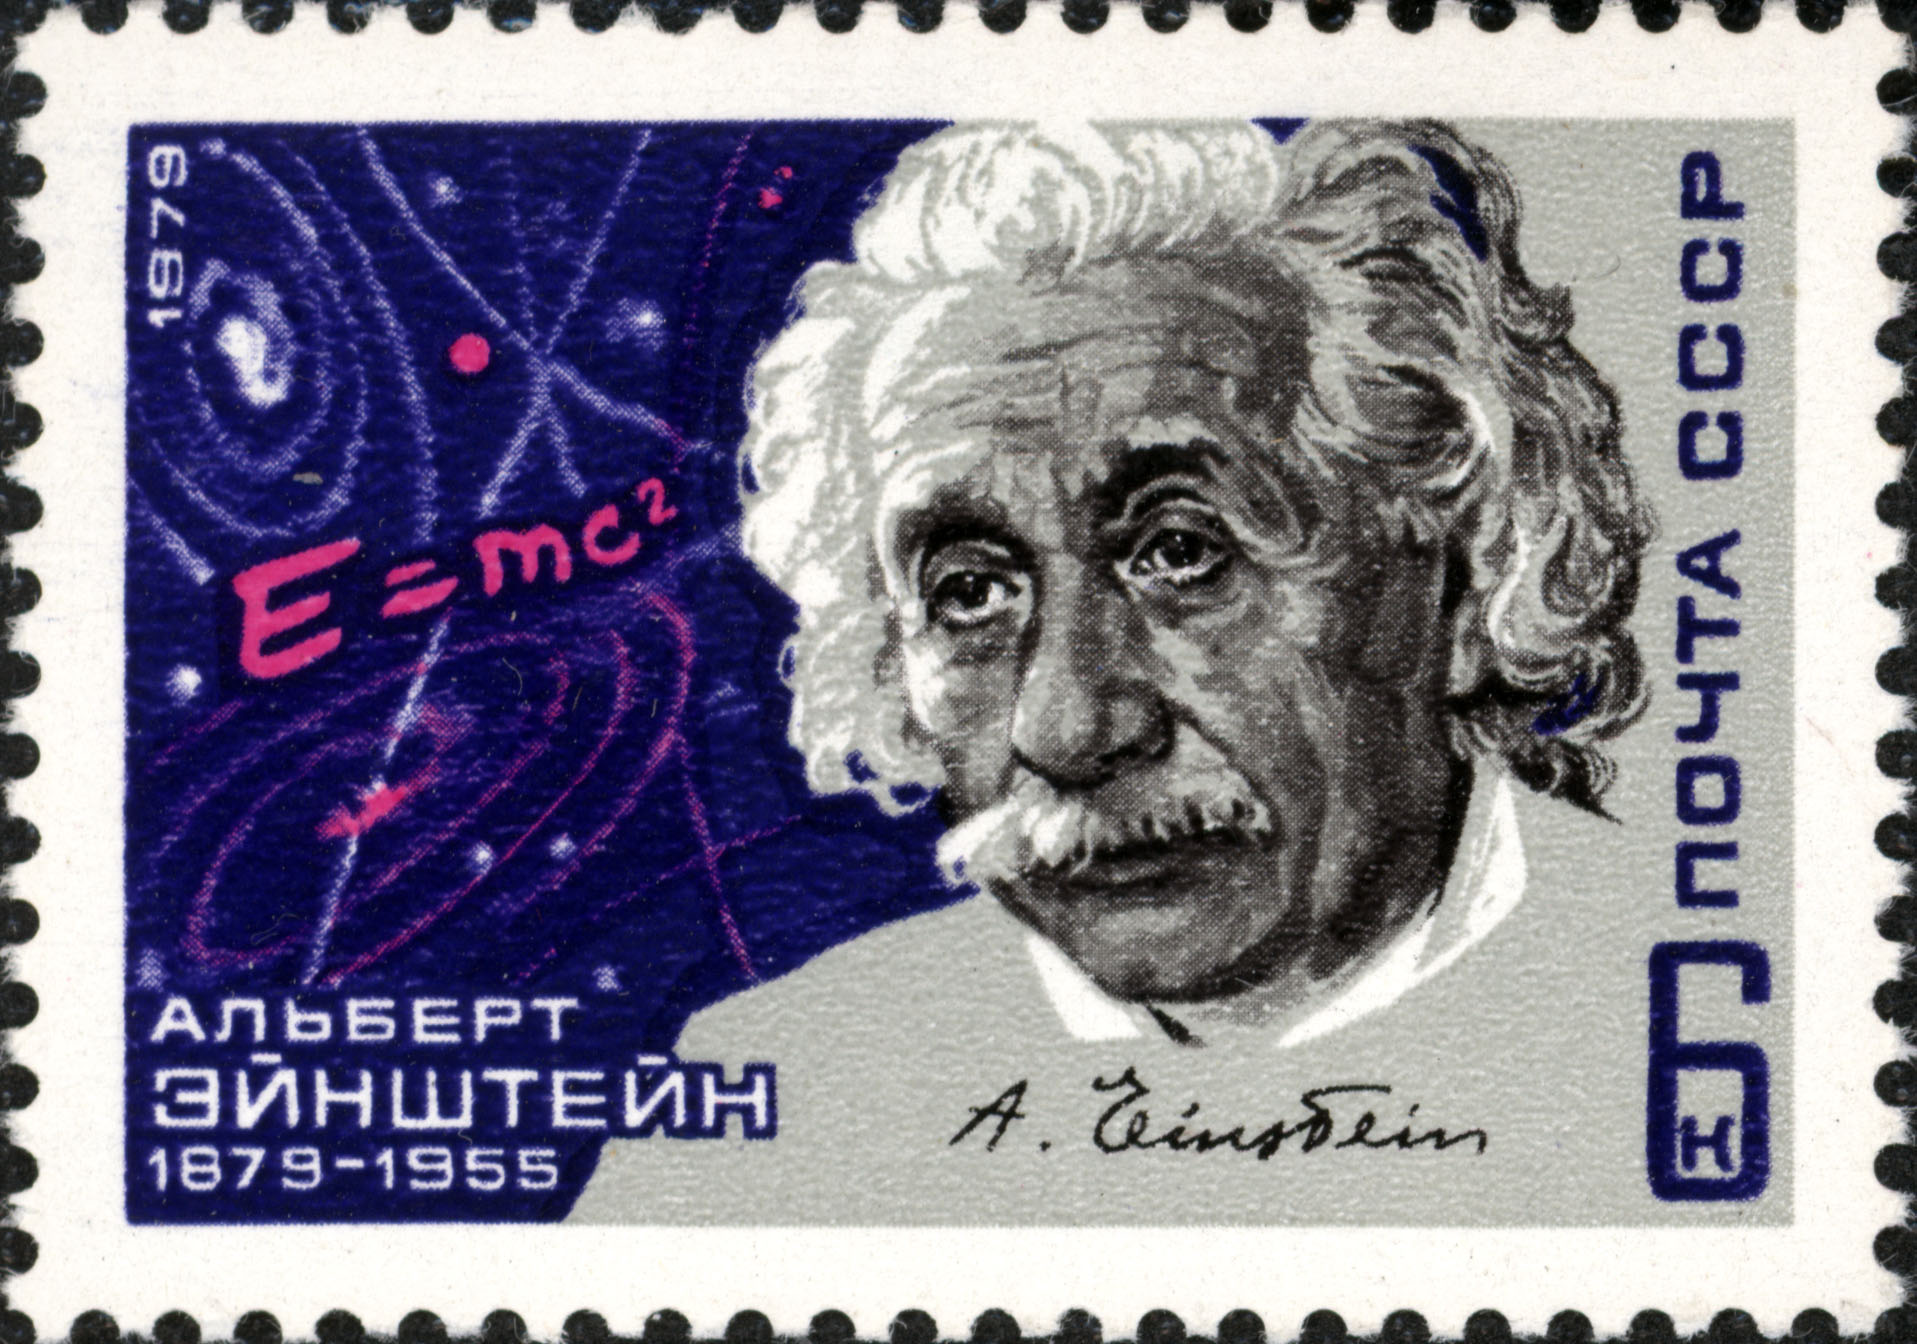 Albert Einstein gewidmete Briefmarke der UdSSR, 16. März 1979